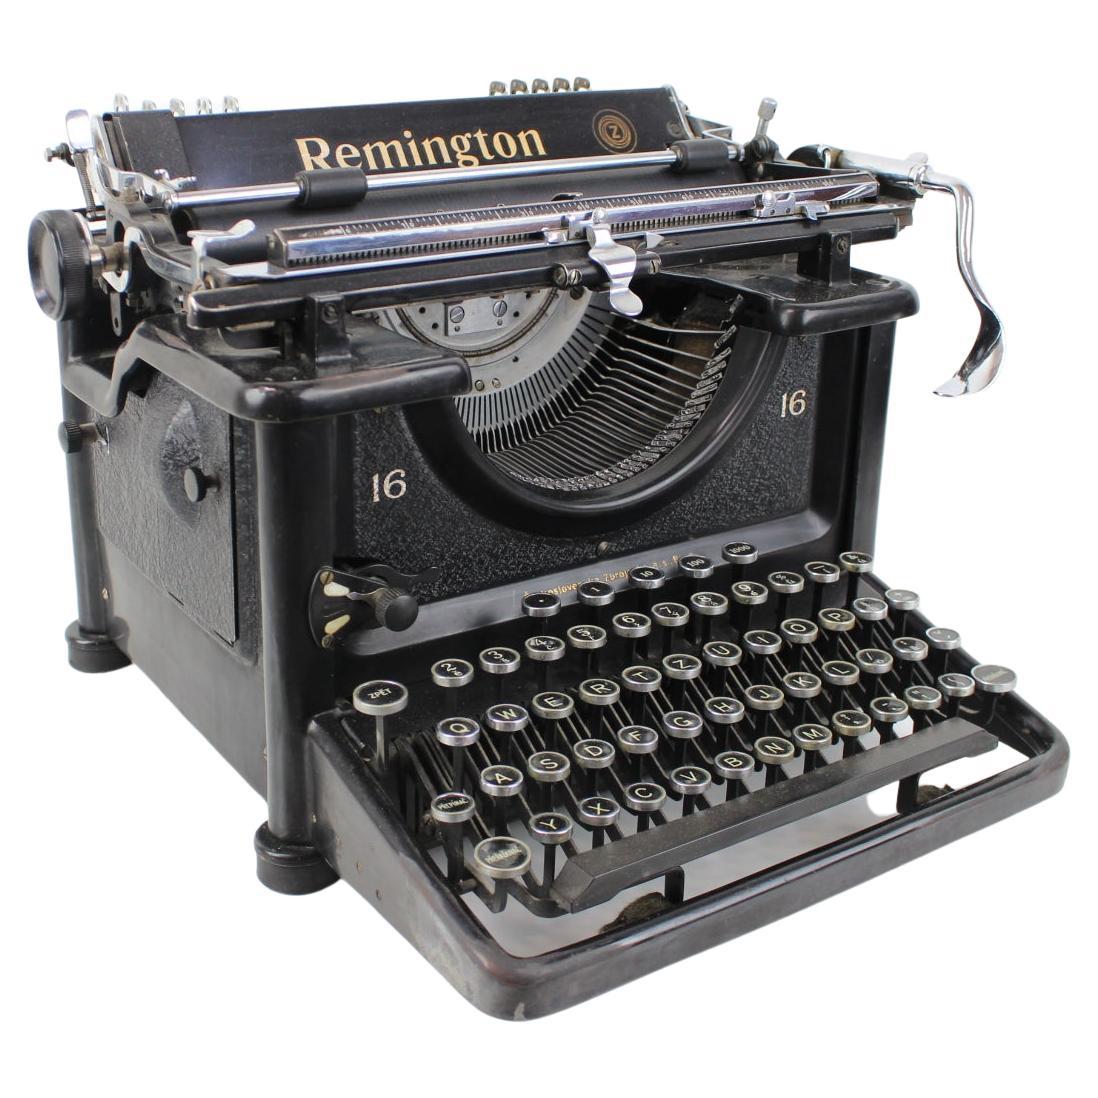 Typewriter, Manufacturer Remington: Zbrojovka Brno, circa 1935